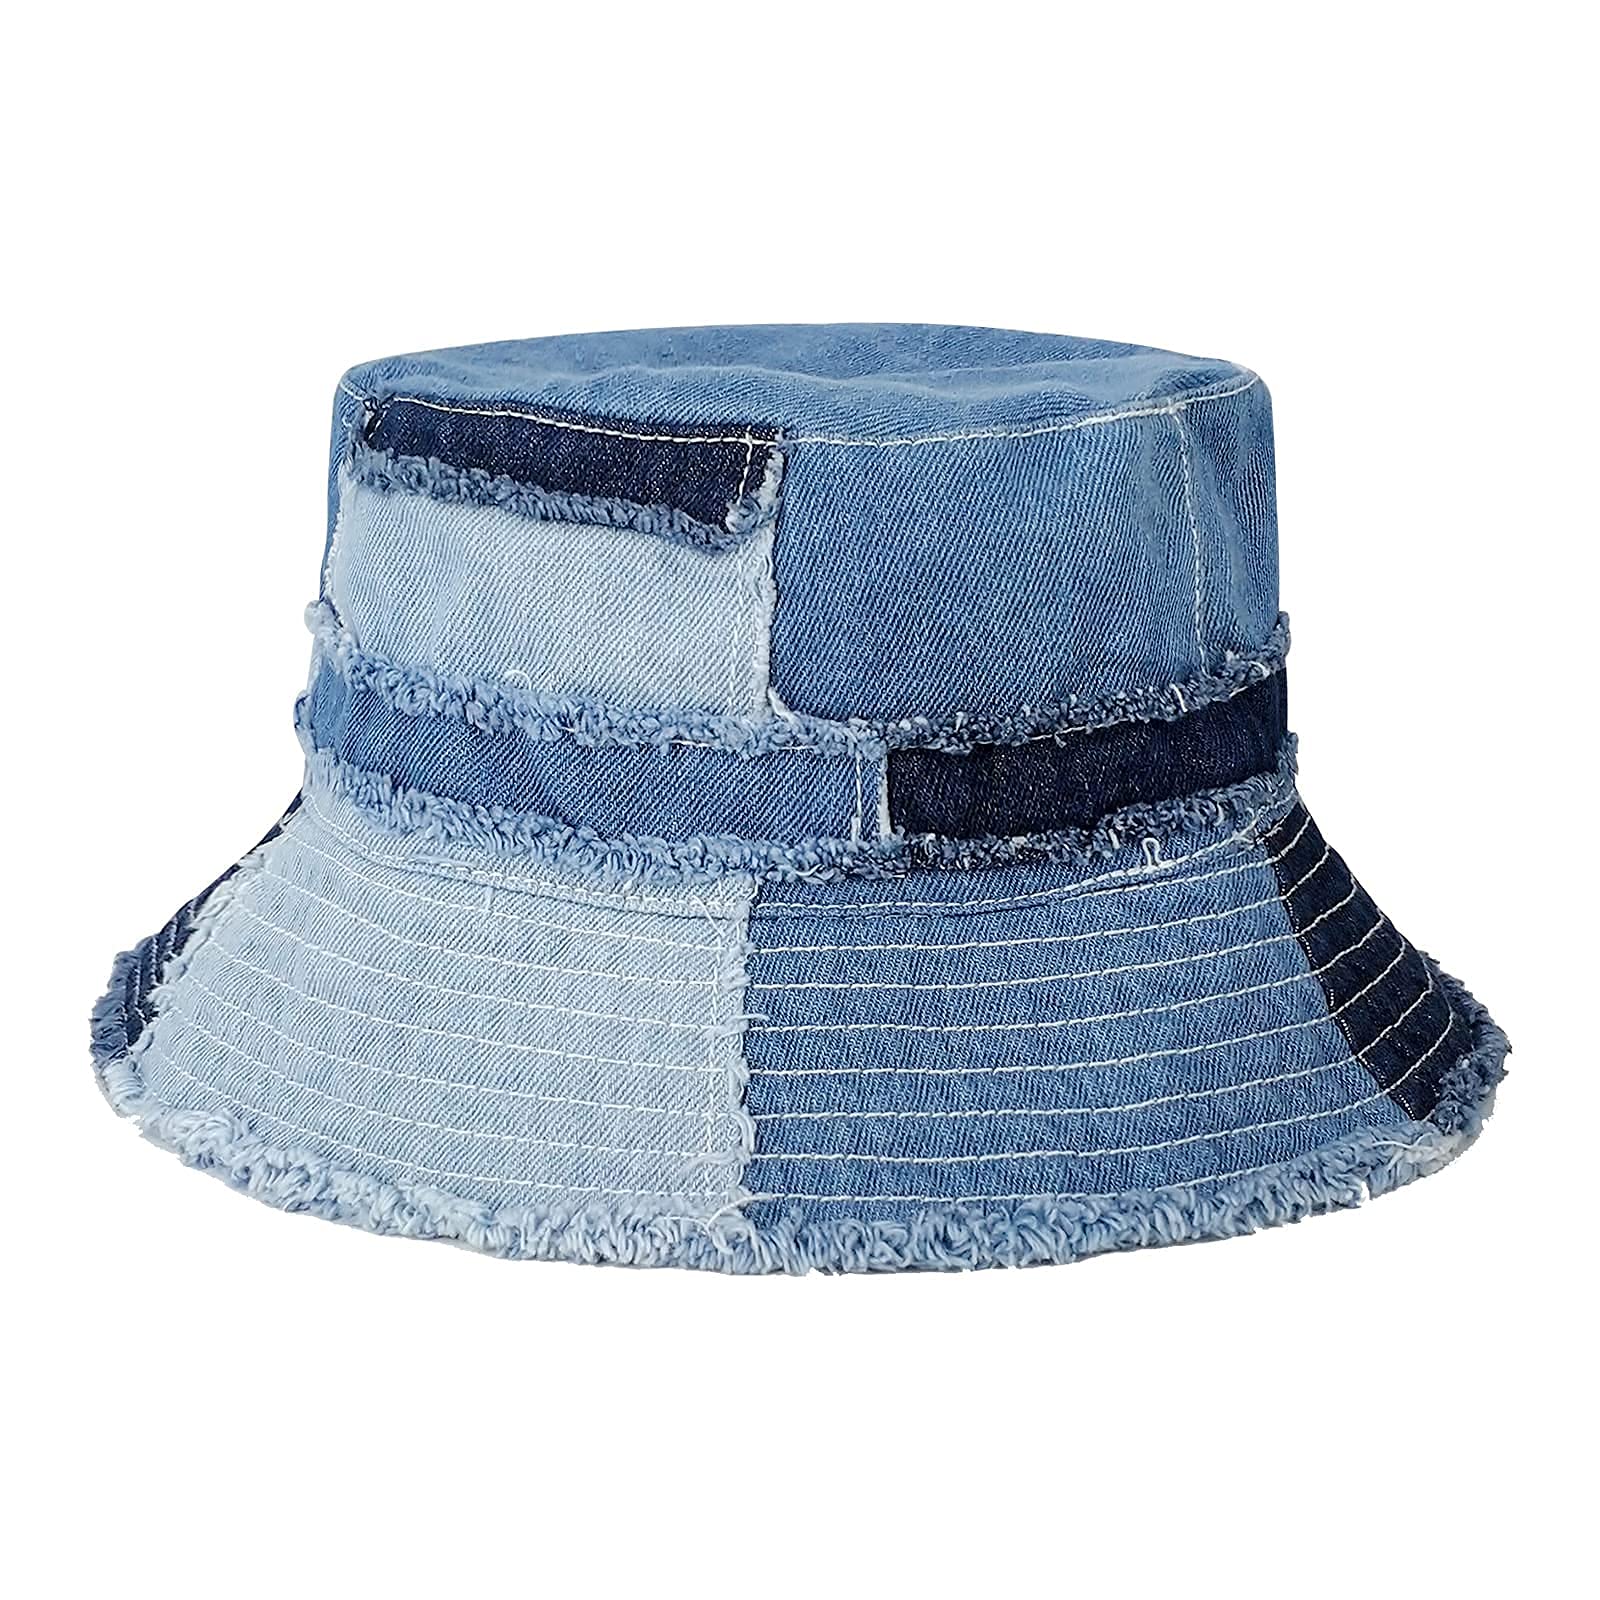 Light blue denim summer Sun hat, hiking hat, women's Sun hat, travel hat, wide brim summer hat, cotton sunhat, denim Beach hat, Active style